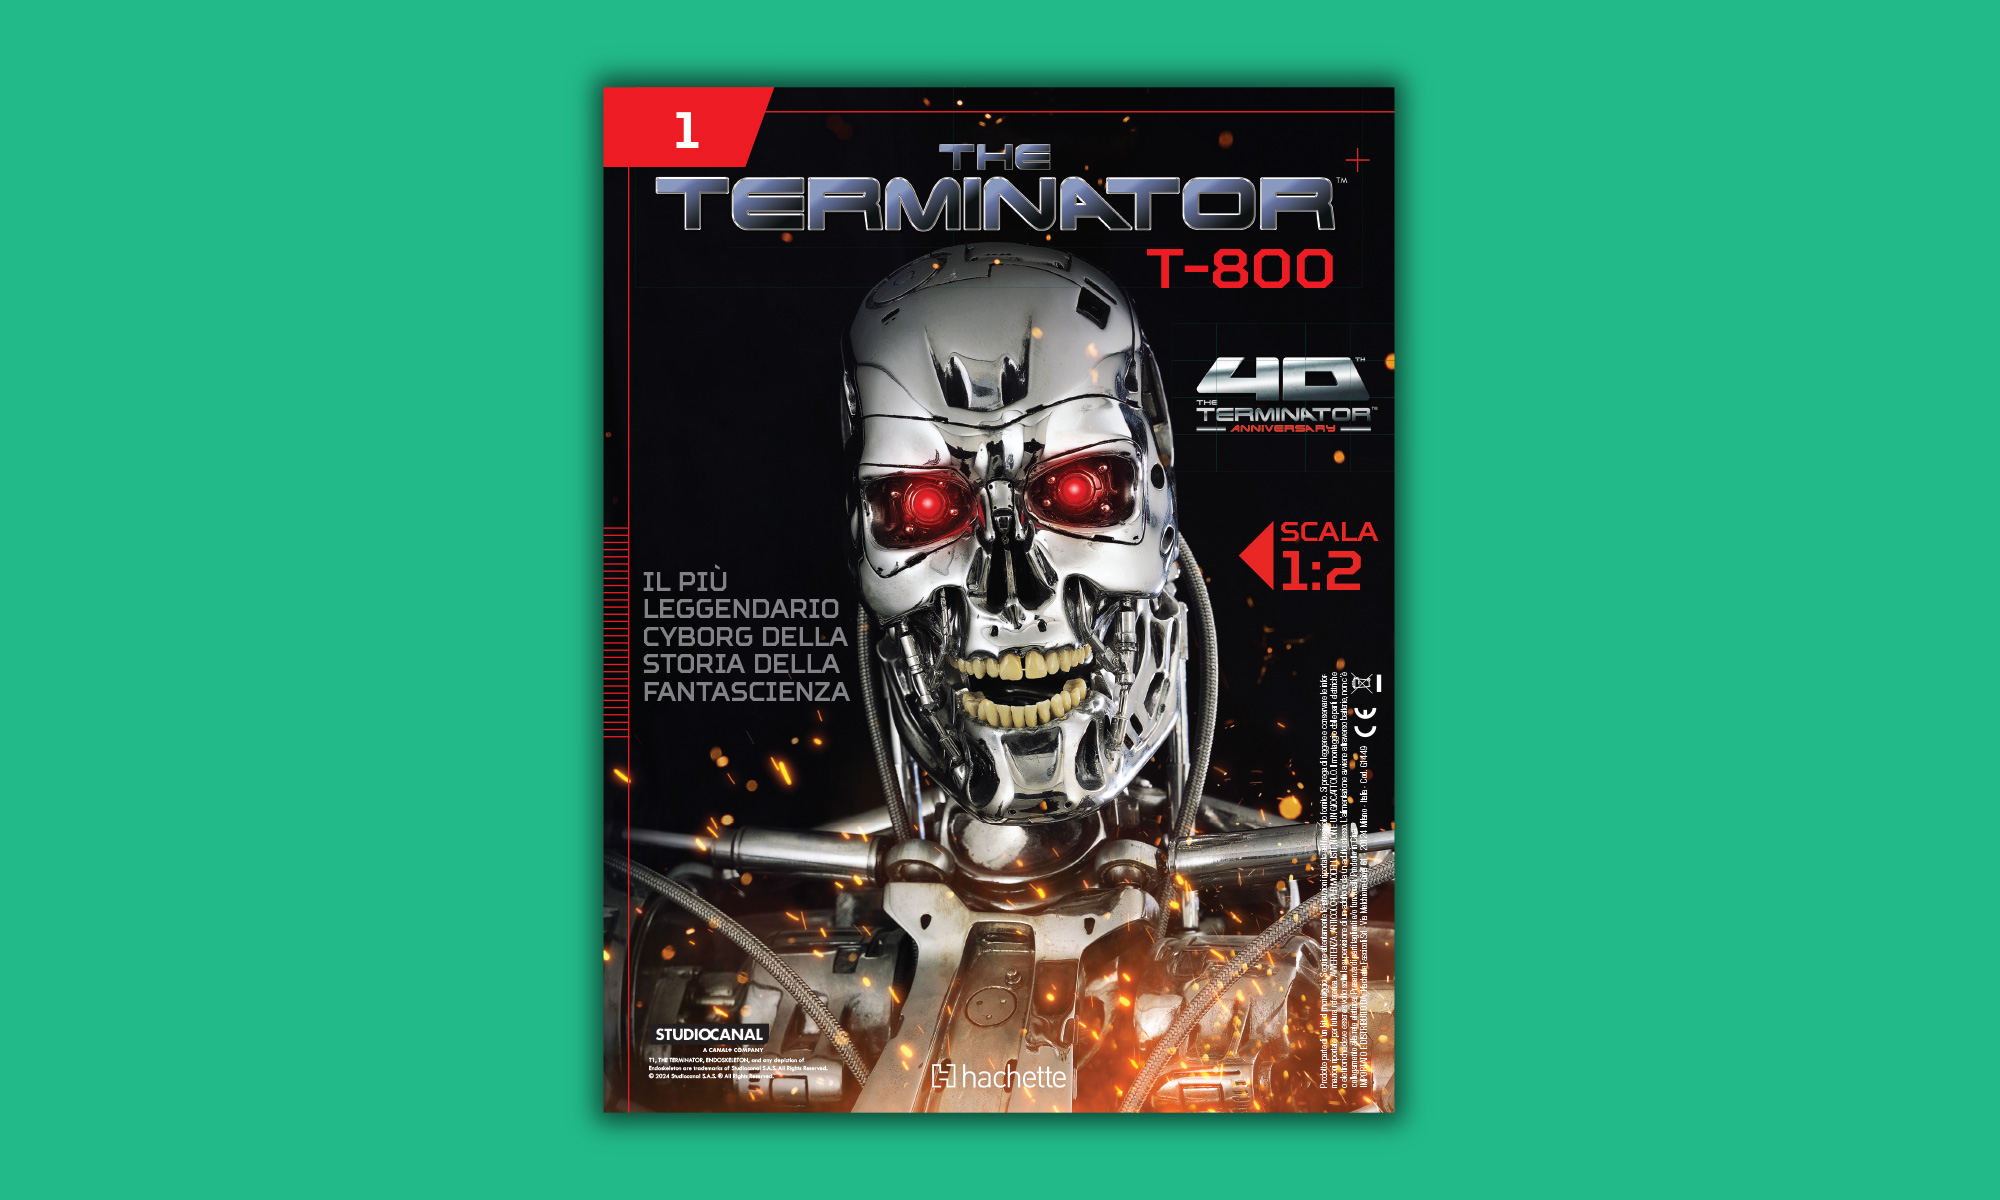 The Terminator T-800